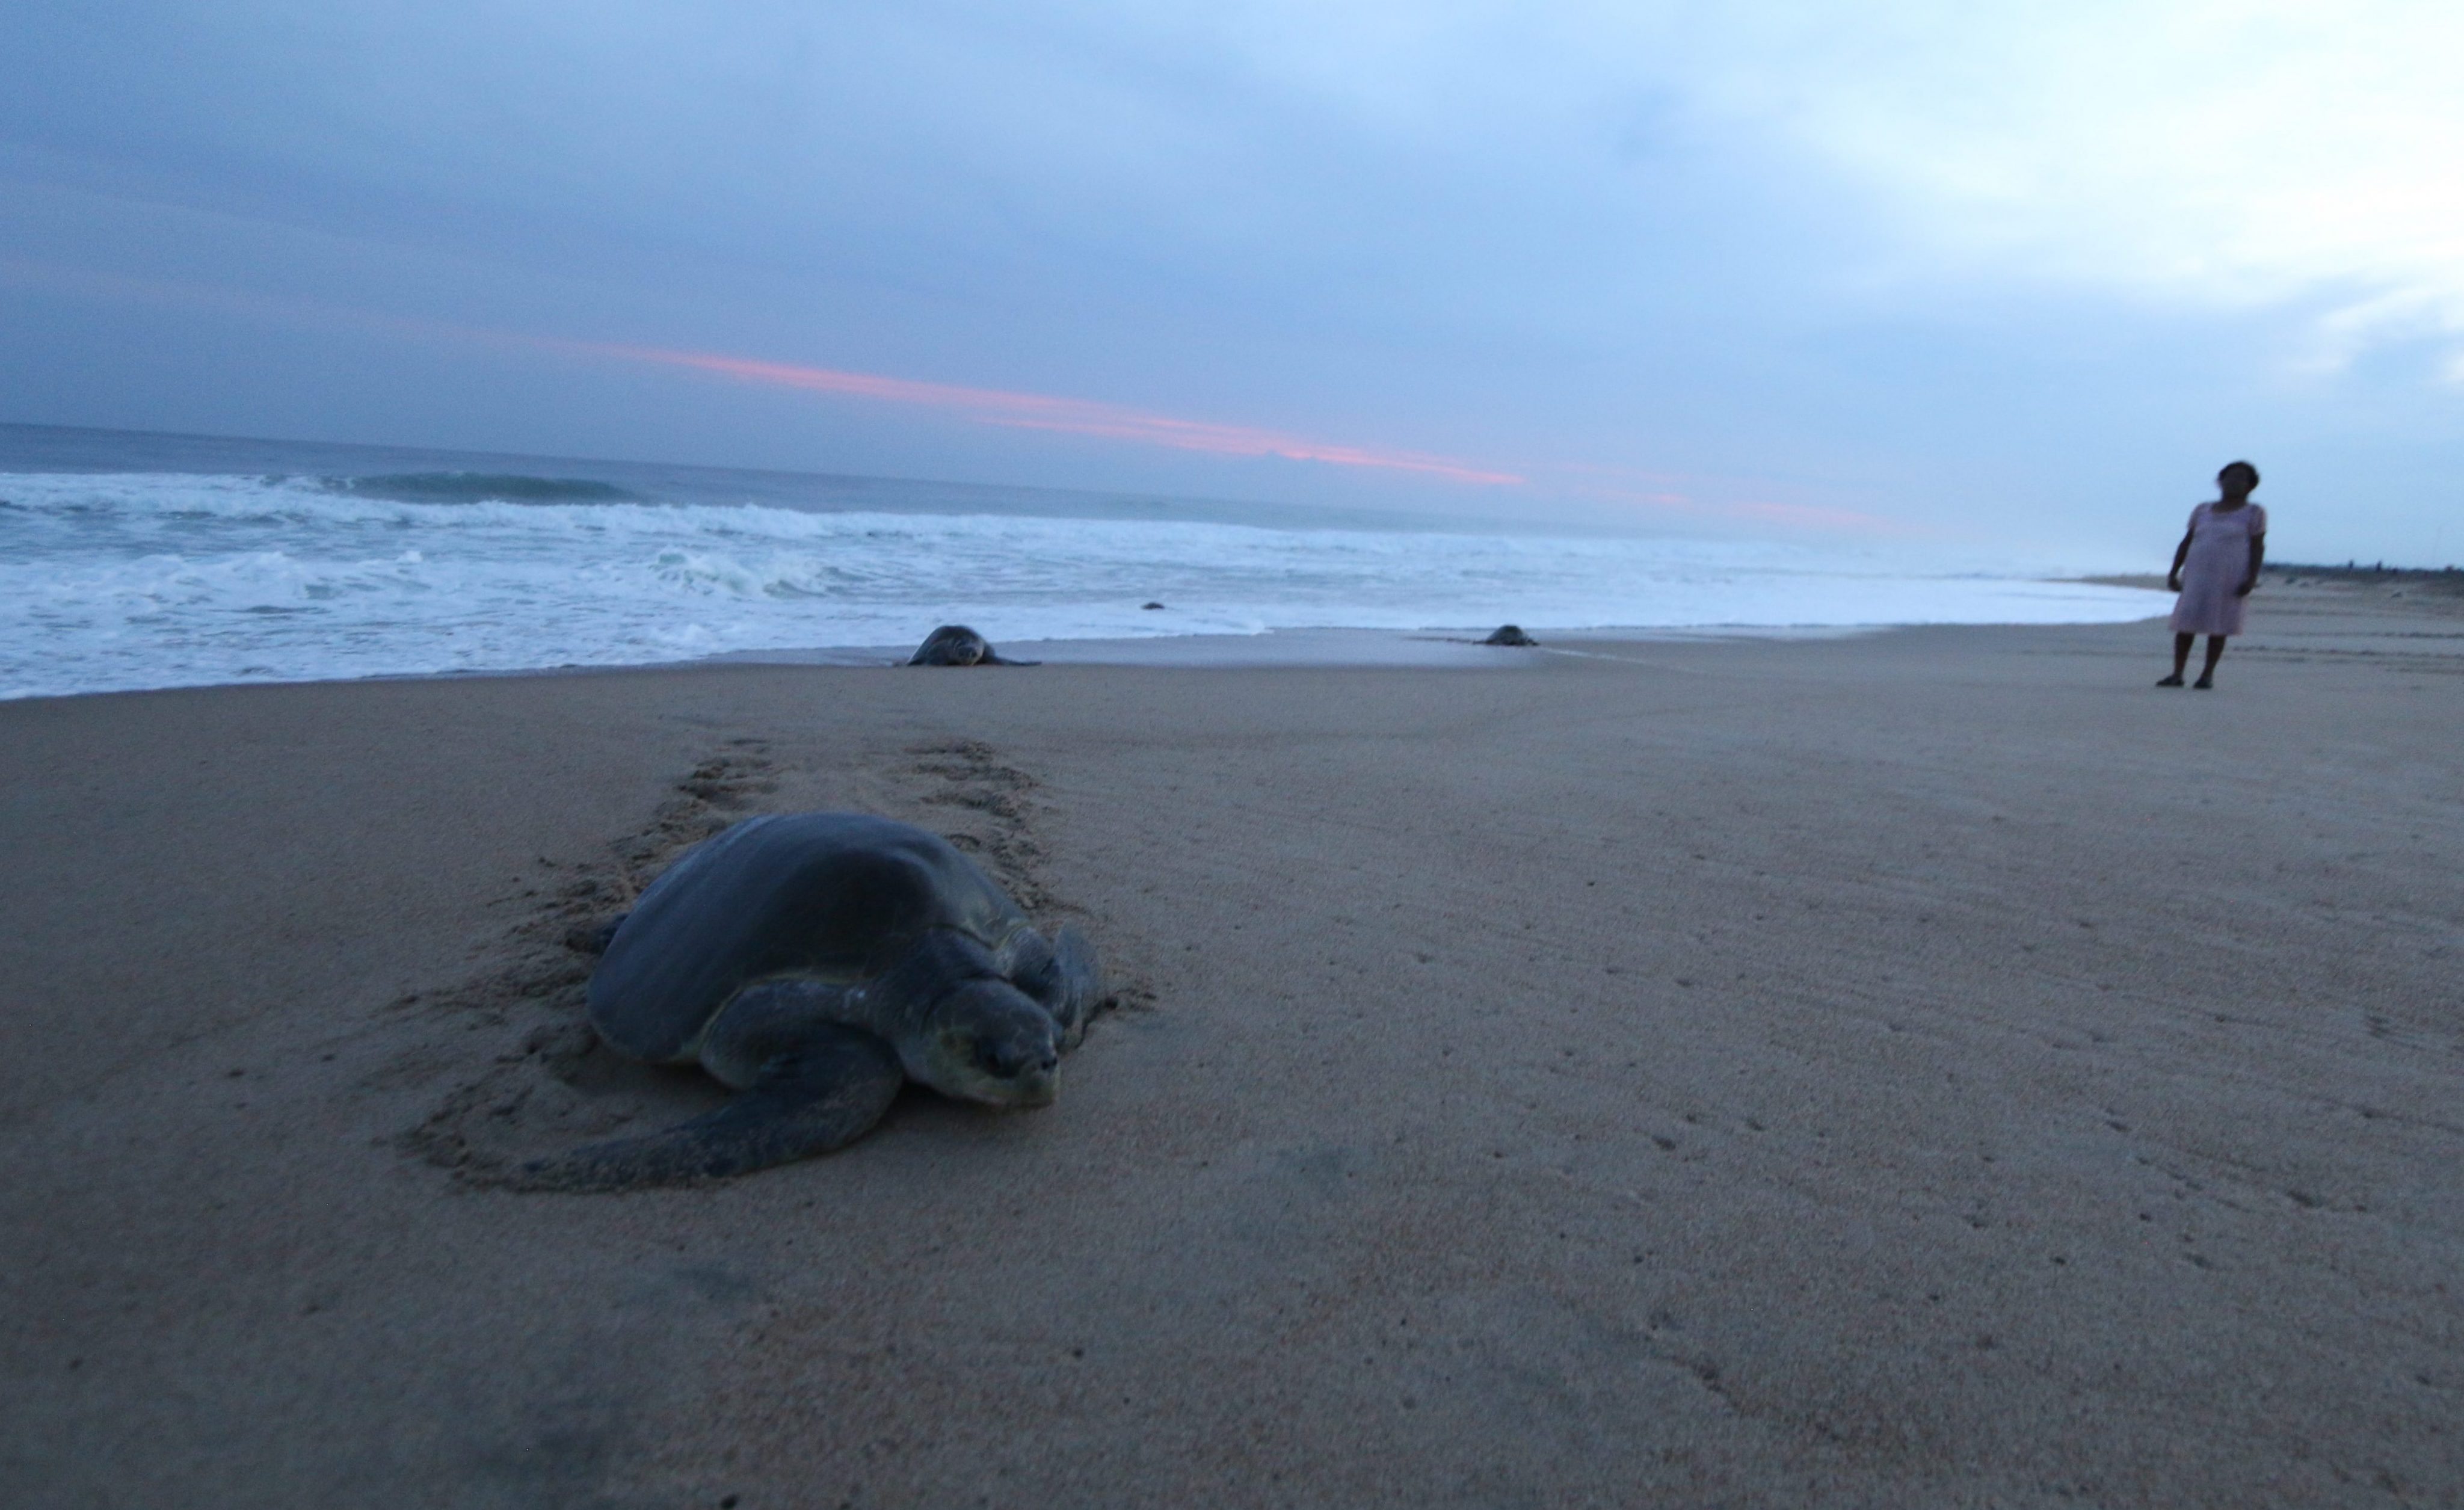 122 turtles sea turtles, most of a species in danger of extinction, die on beaches of Chiapas